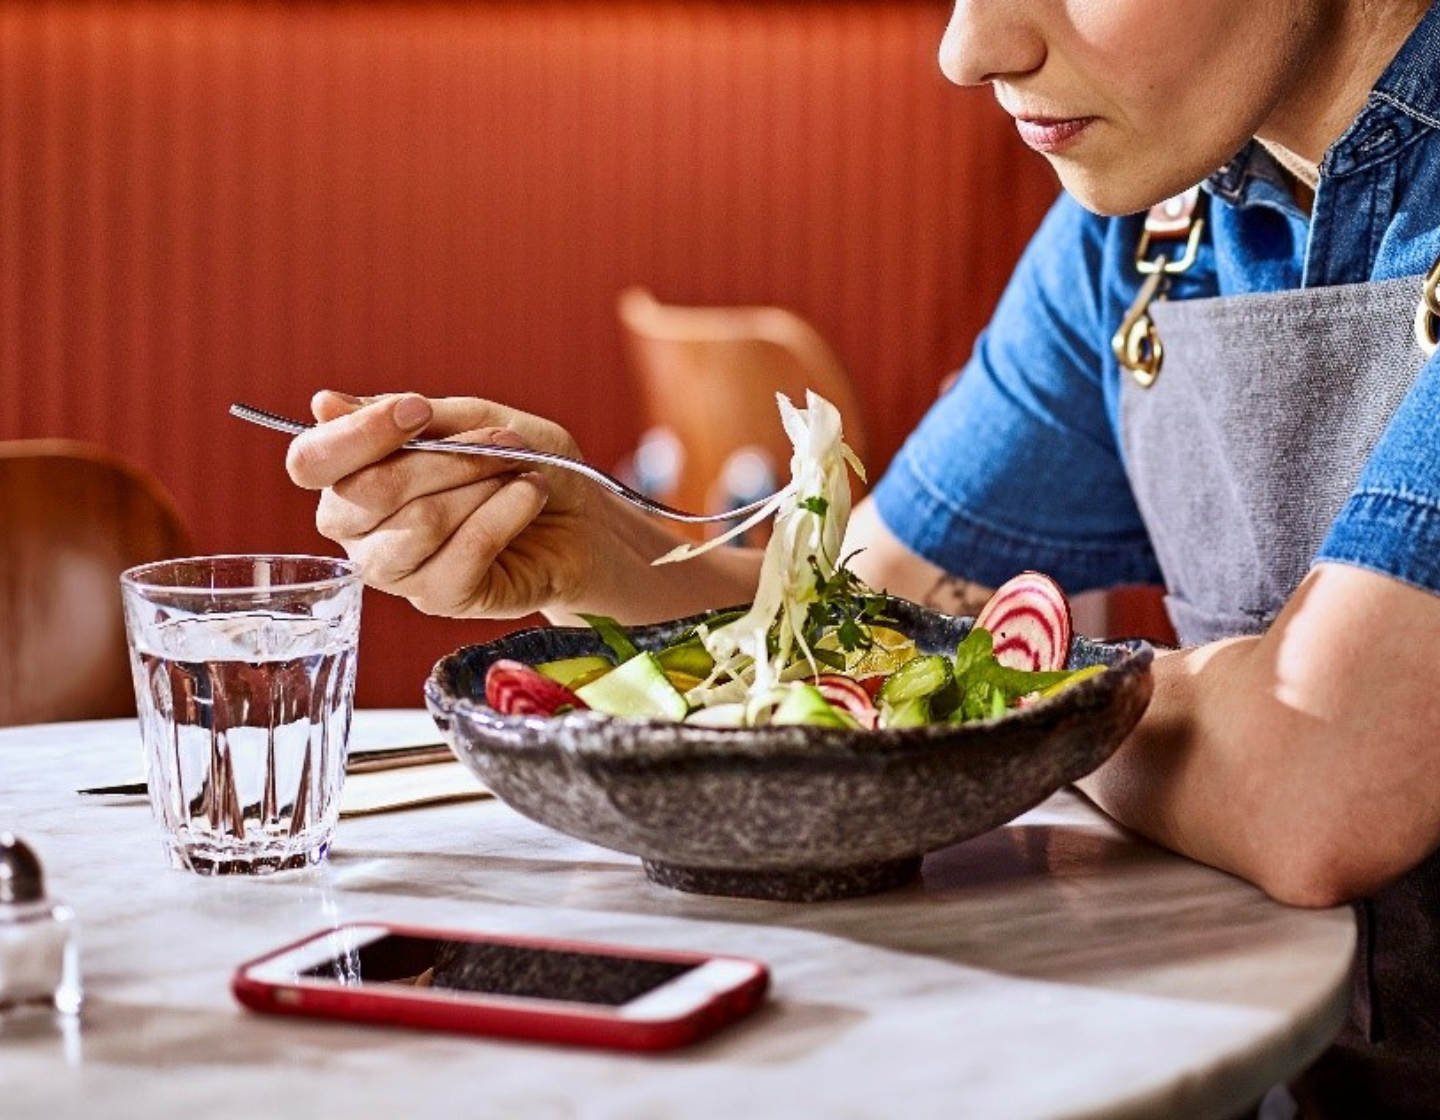 Mujer comiendo una ensalada y descansando de un ajetreado turno de trabajo en un restaurante o bar.